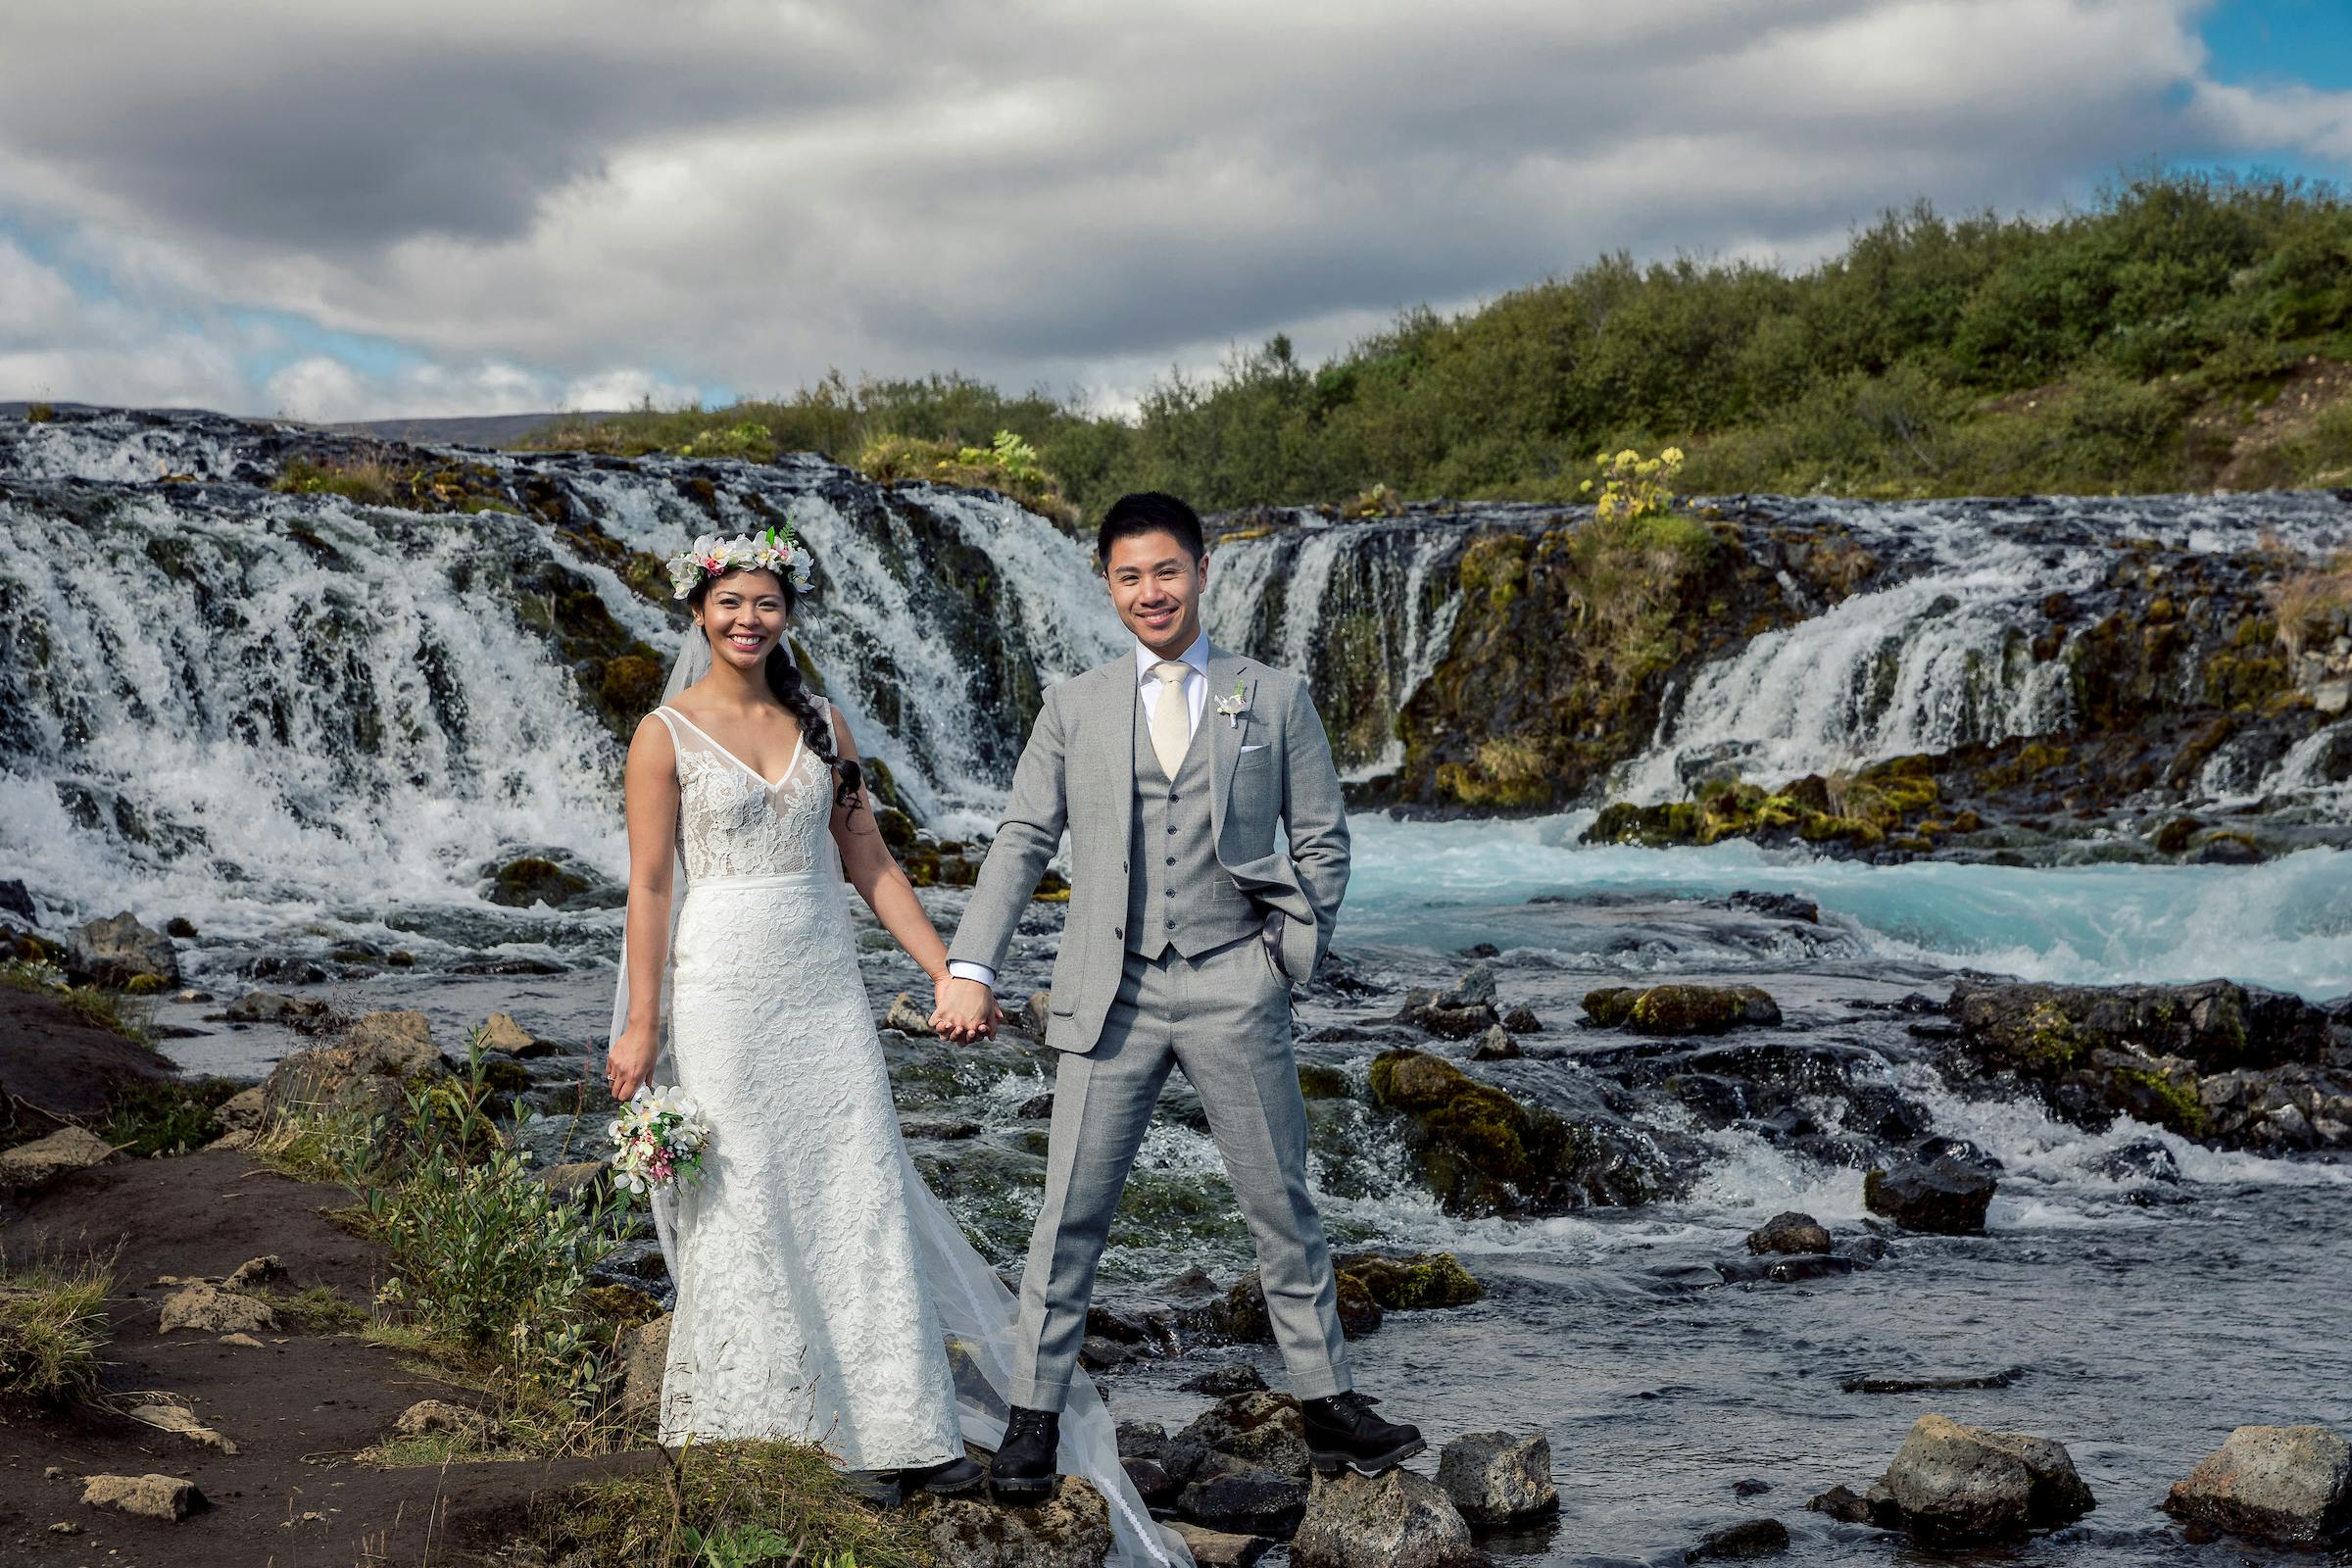 Photo: Bragi Thor at Iceland Wedding Photo